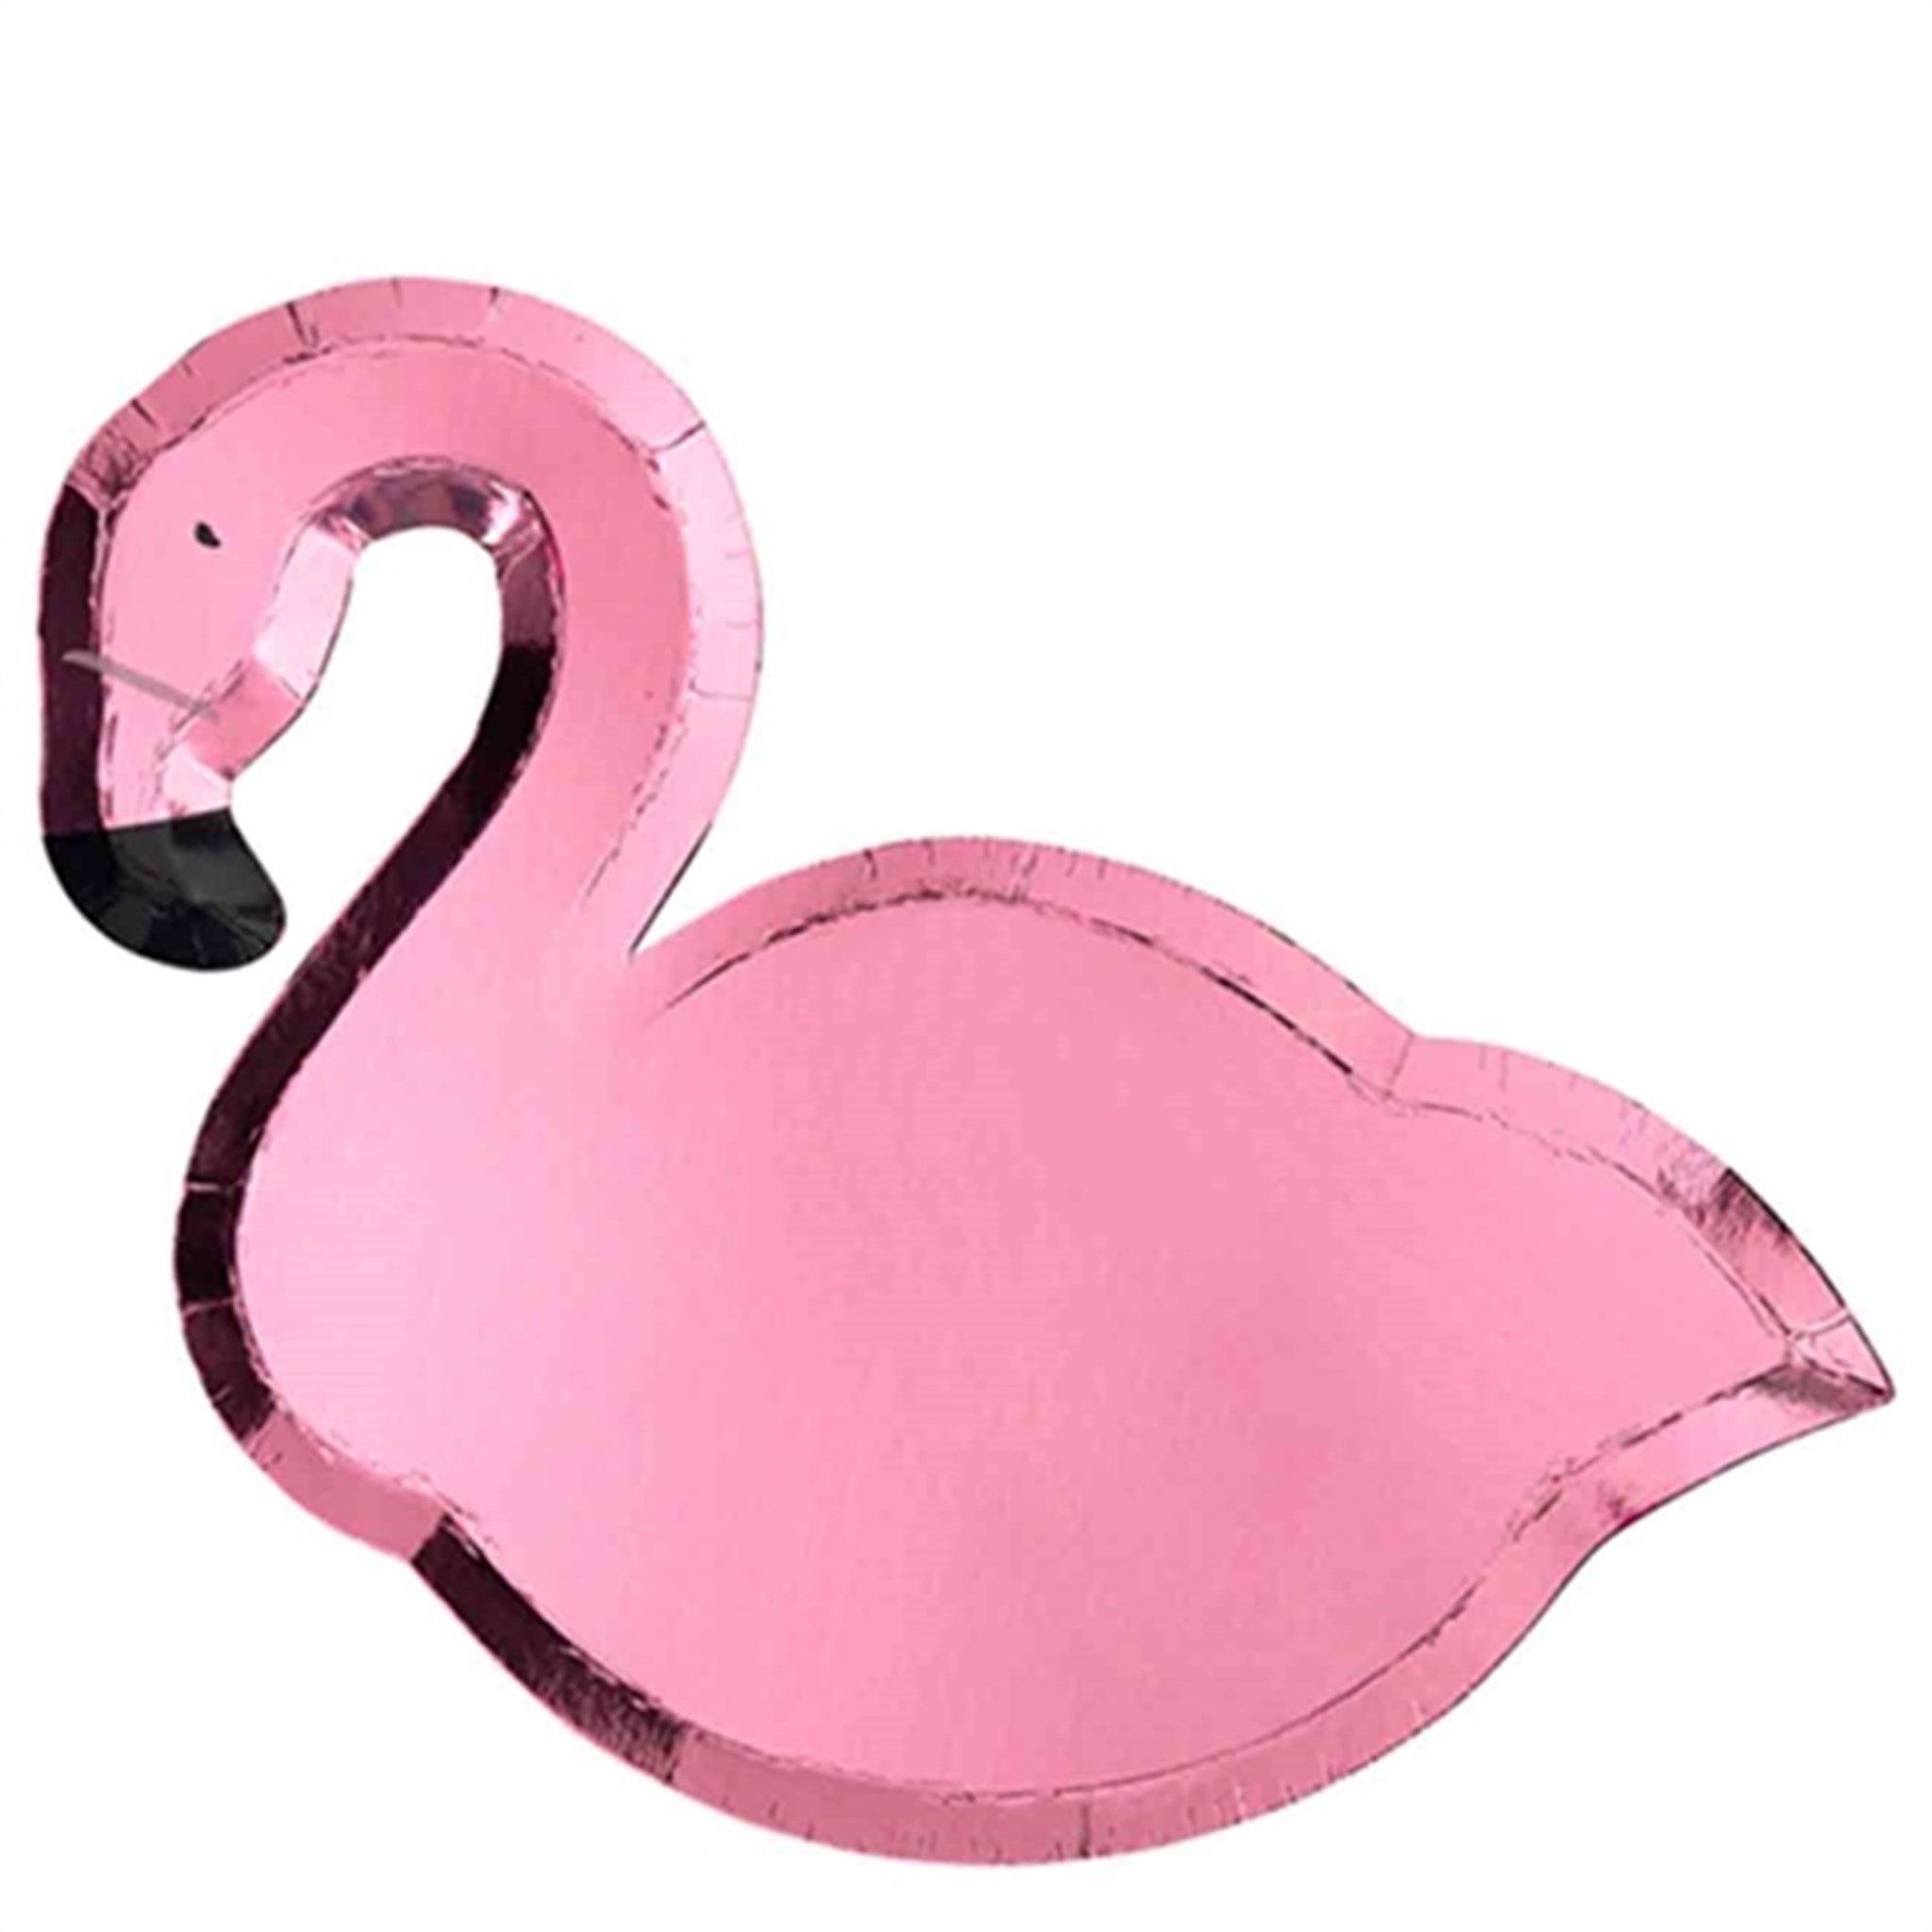 Meri Meri Flamingo Plates